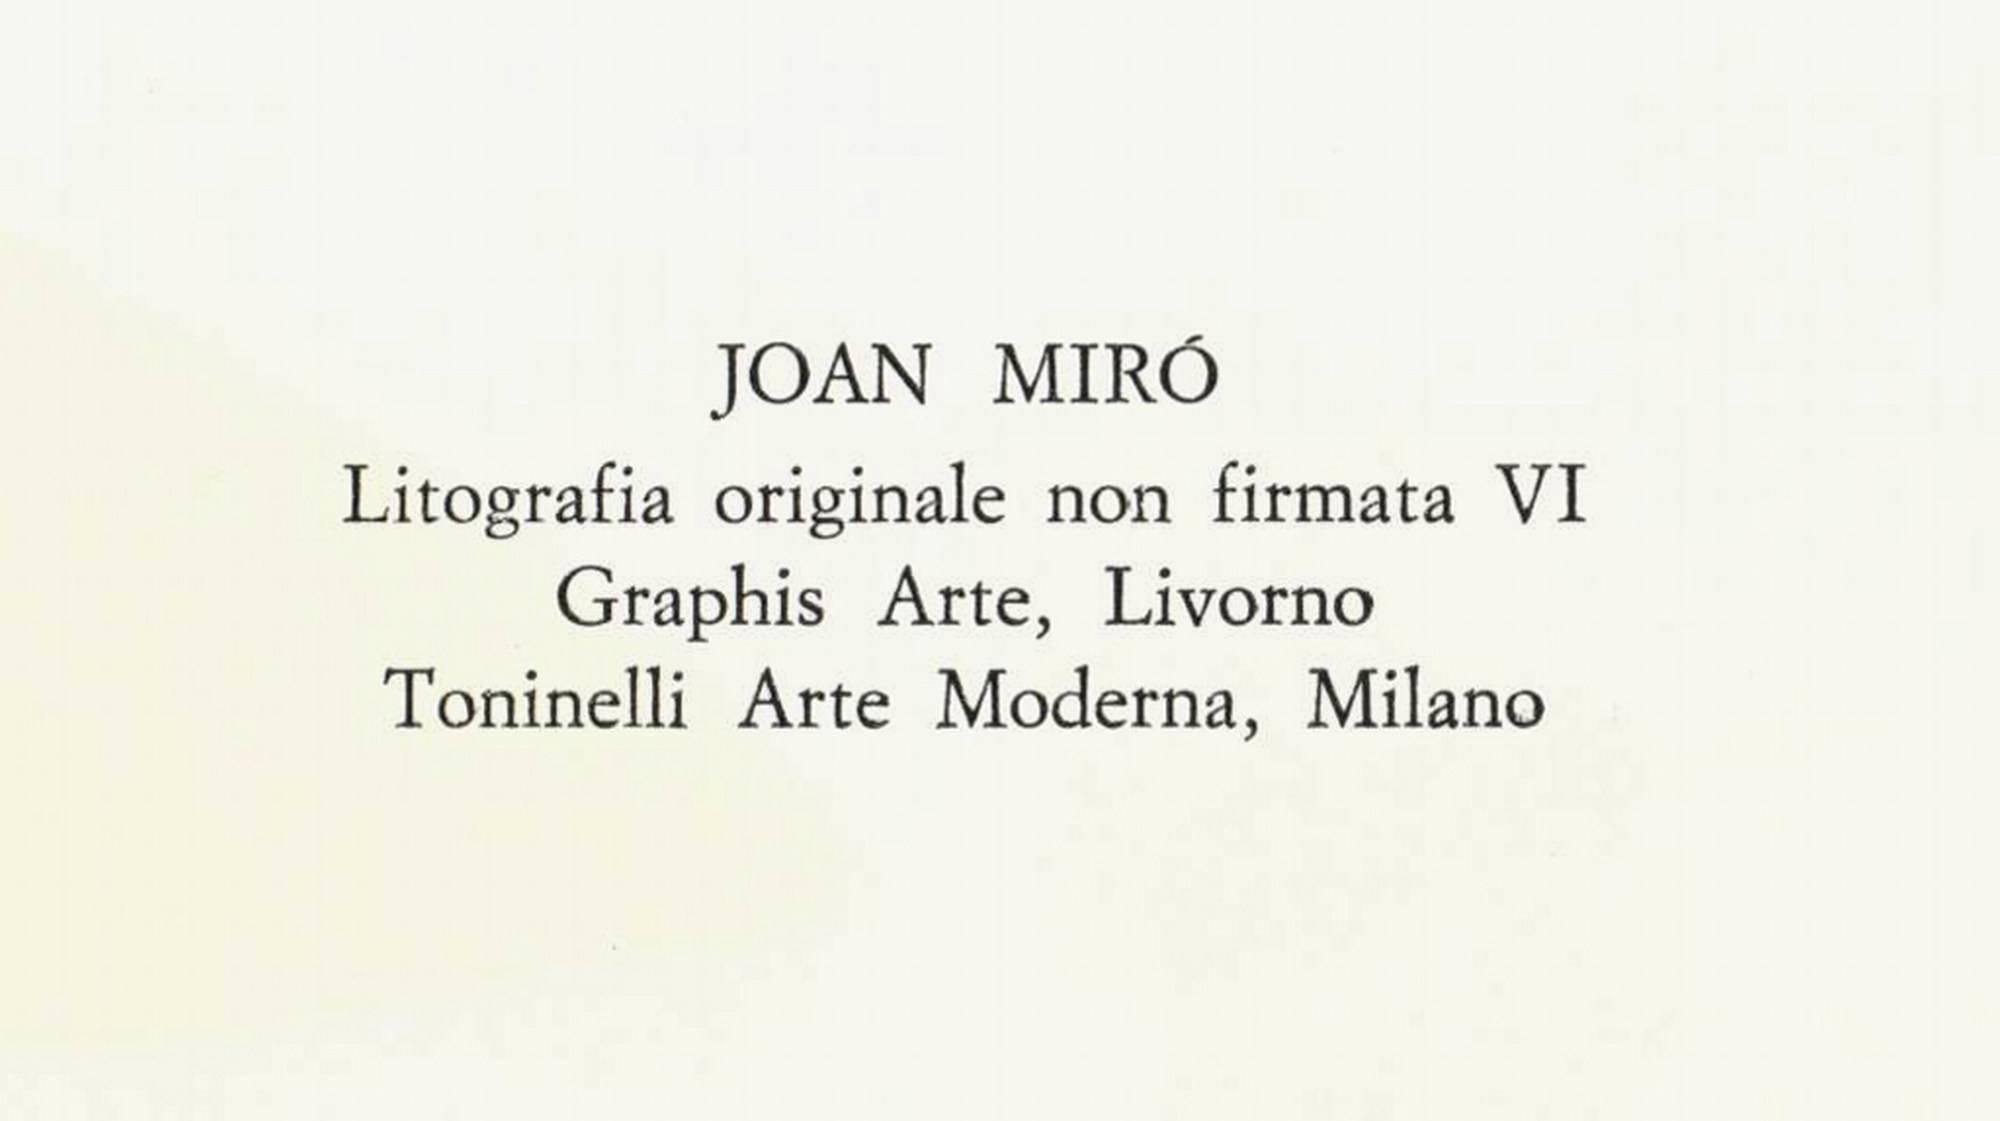 Litografia Originale VI - Minimalist Print by Joan Miró